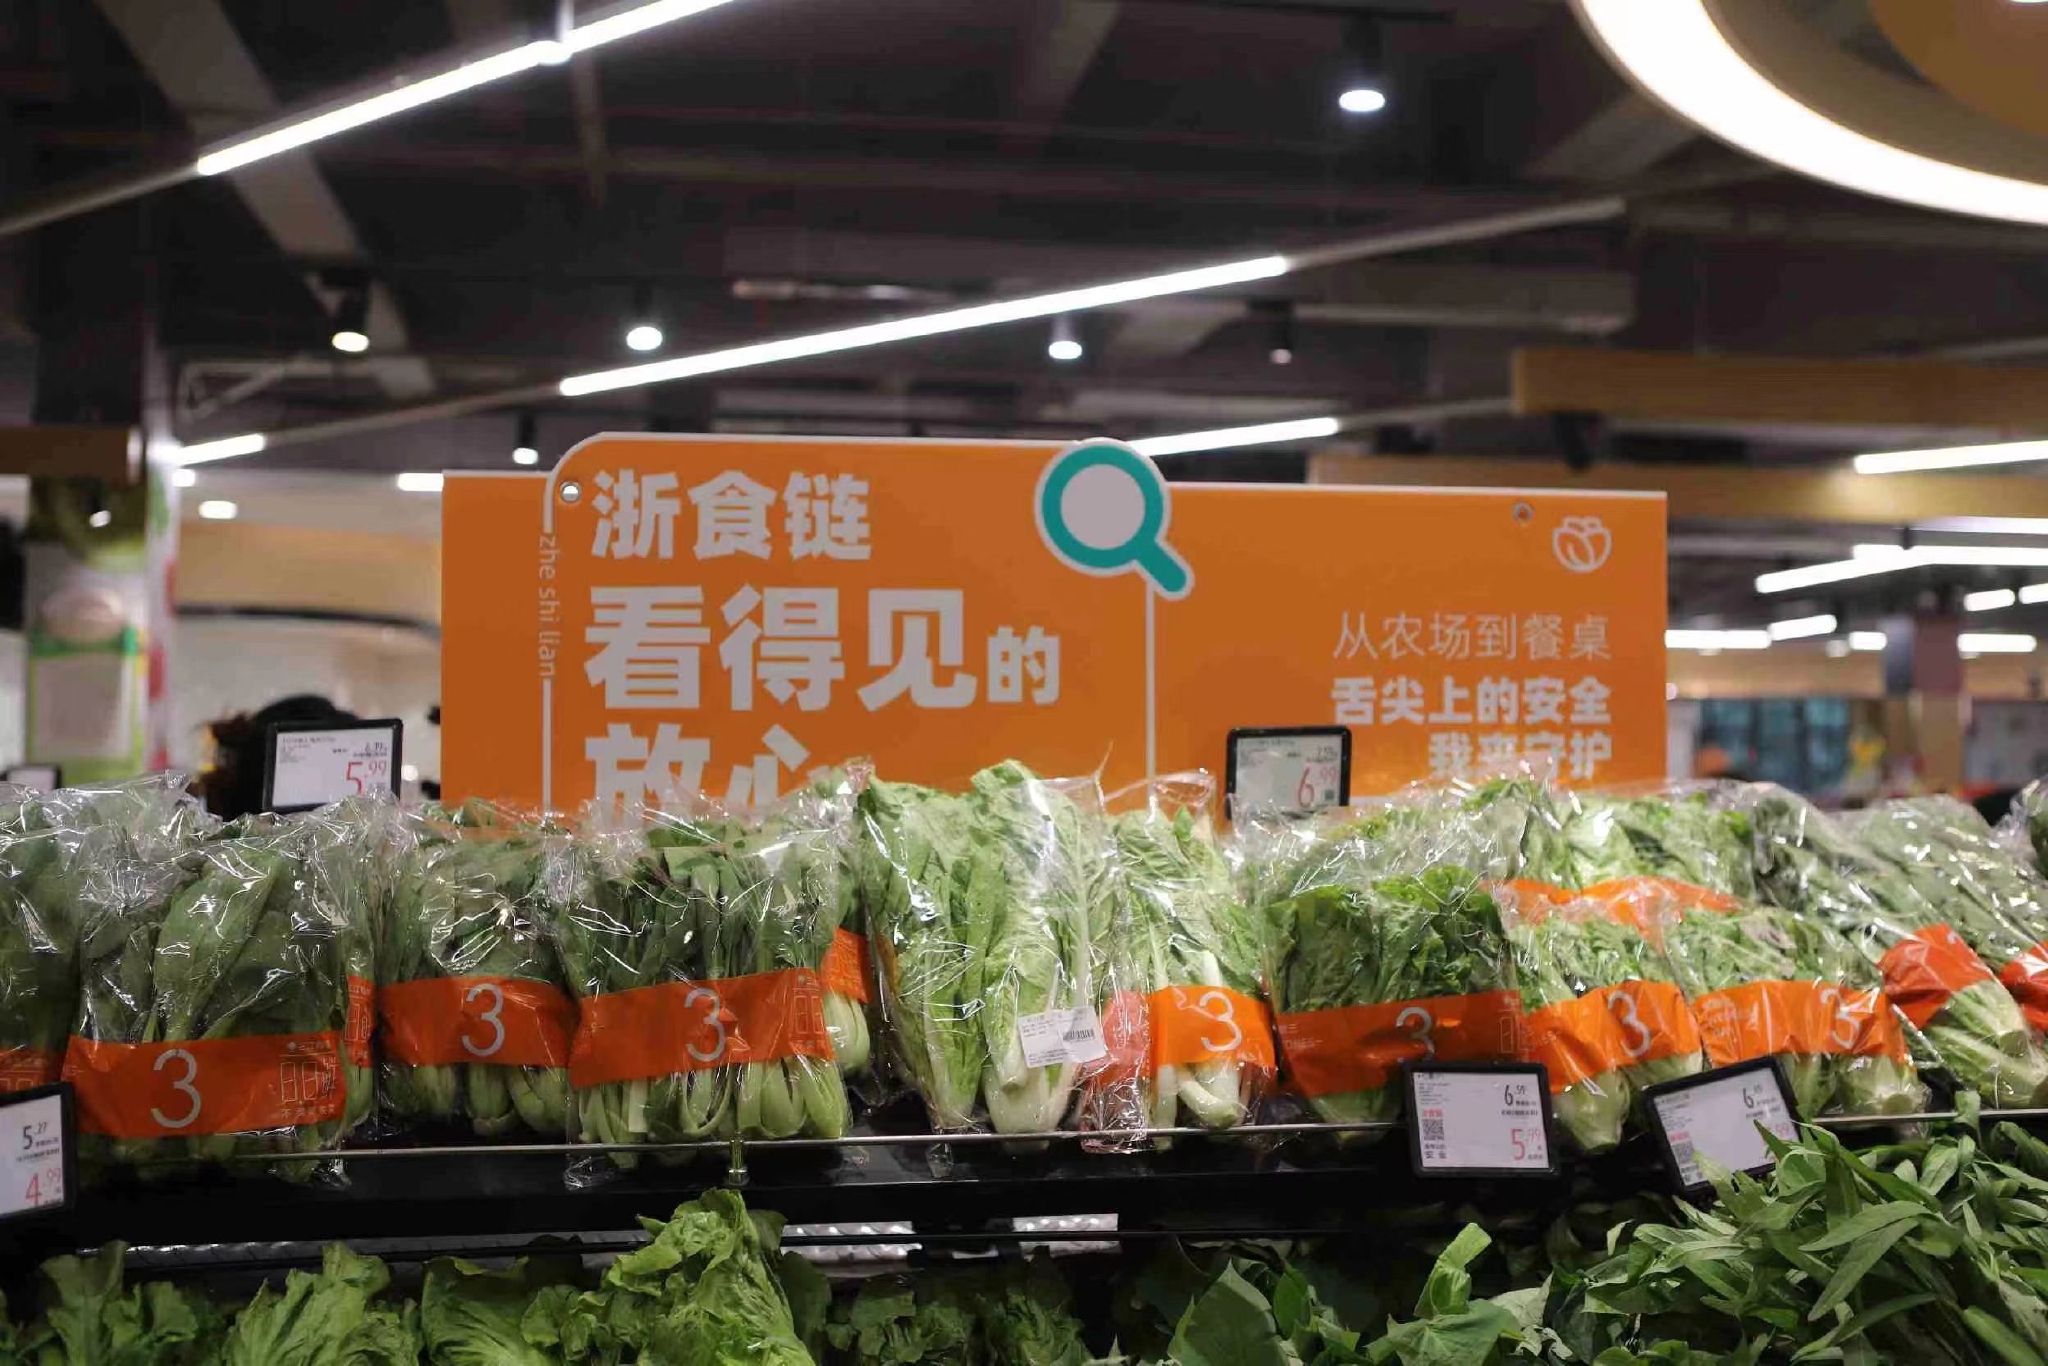 农贸批发市场、重点大中型超市完成了“浙食链”系统100%覆盖。资料图片